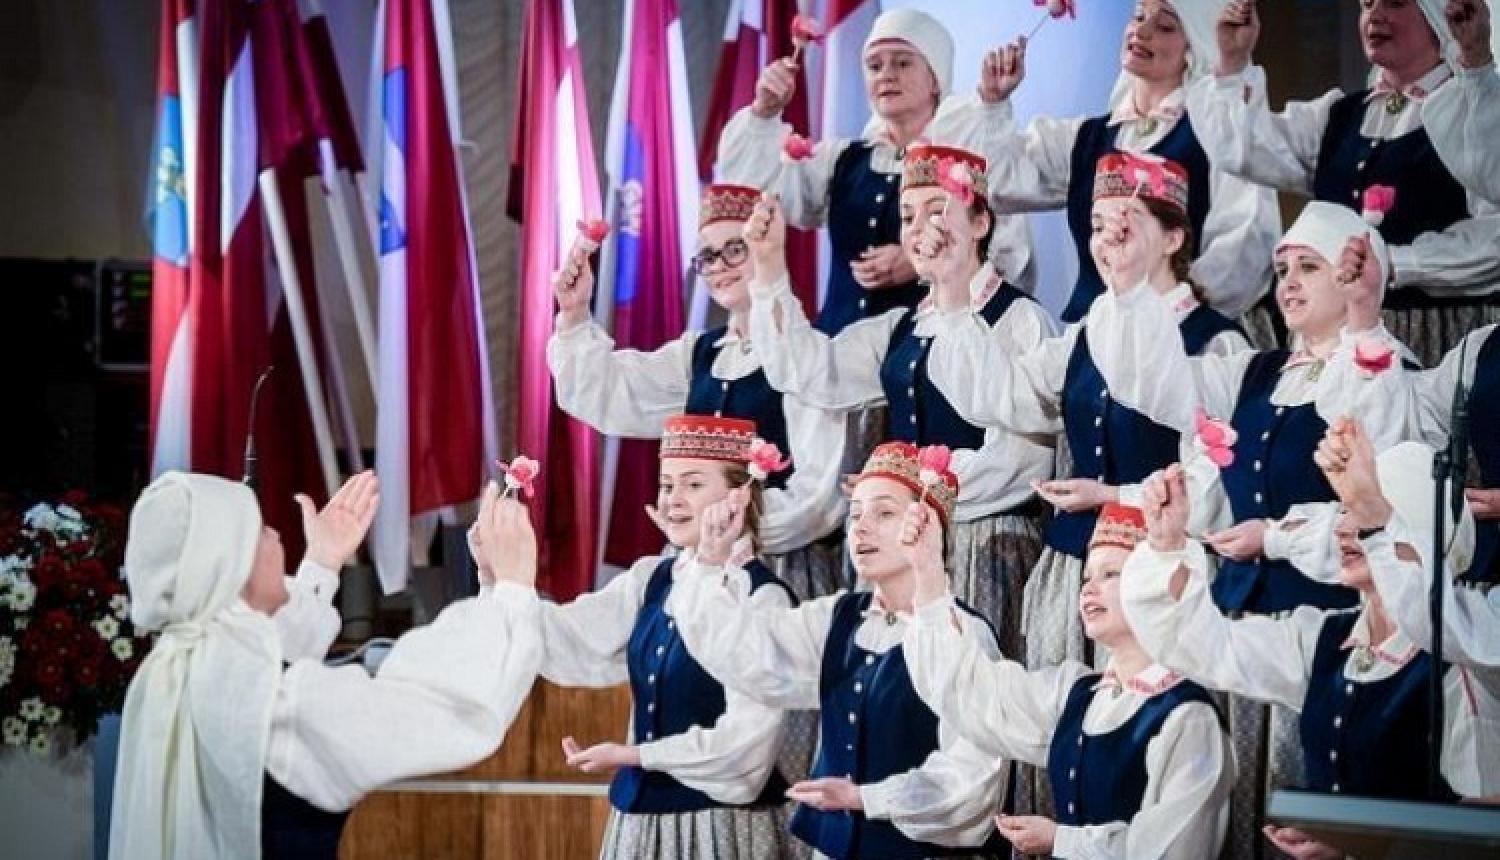 Ievērojami palielinājusies mazākumtautību pārstāvju piederības sajūta Latvijai